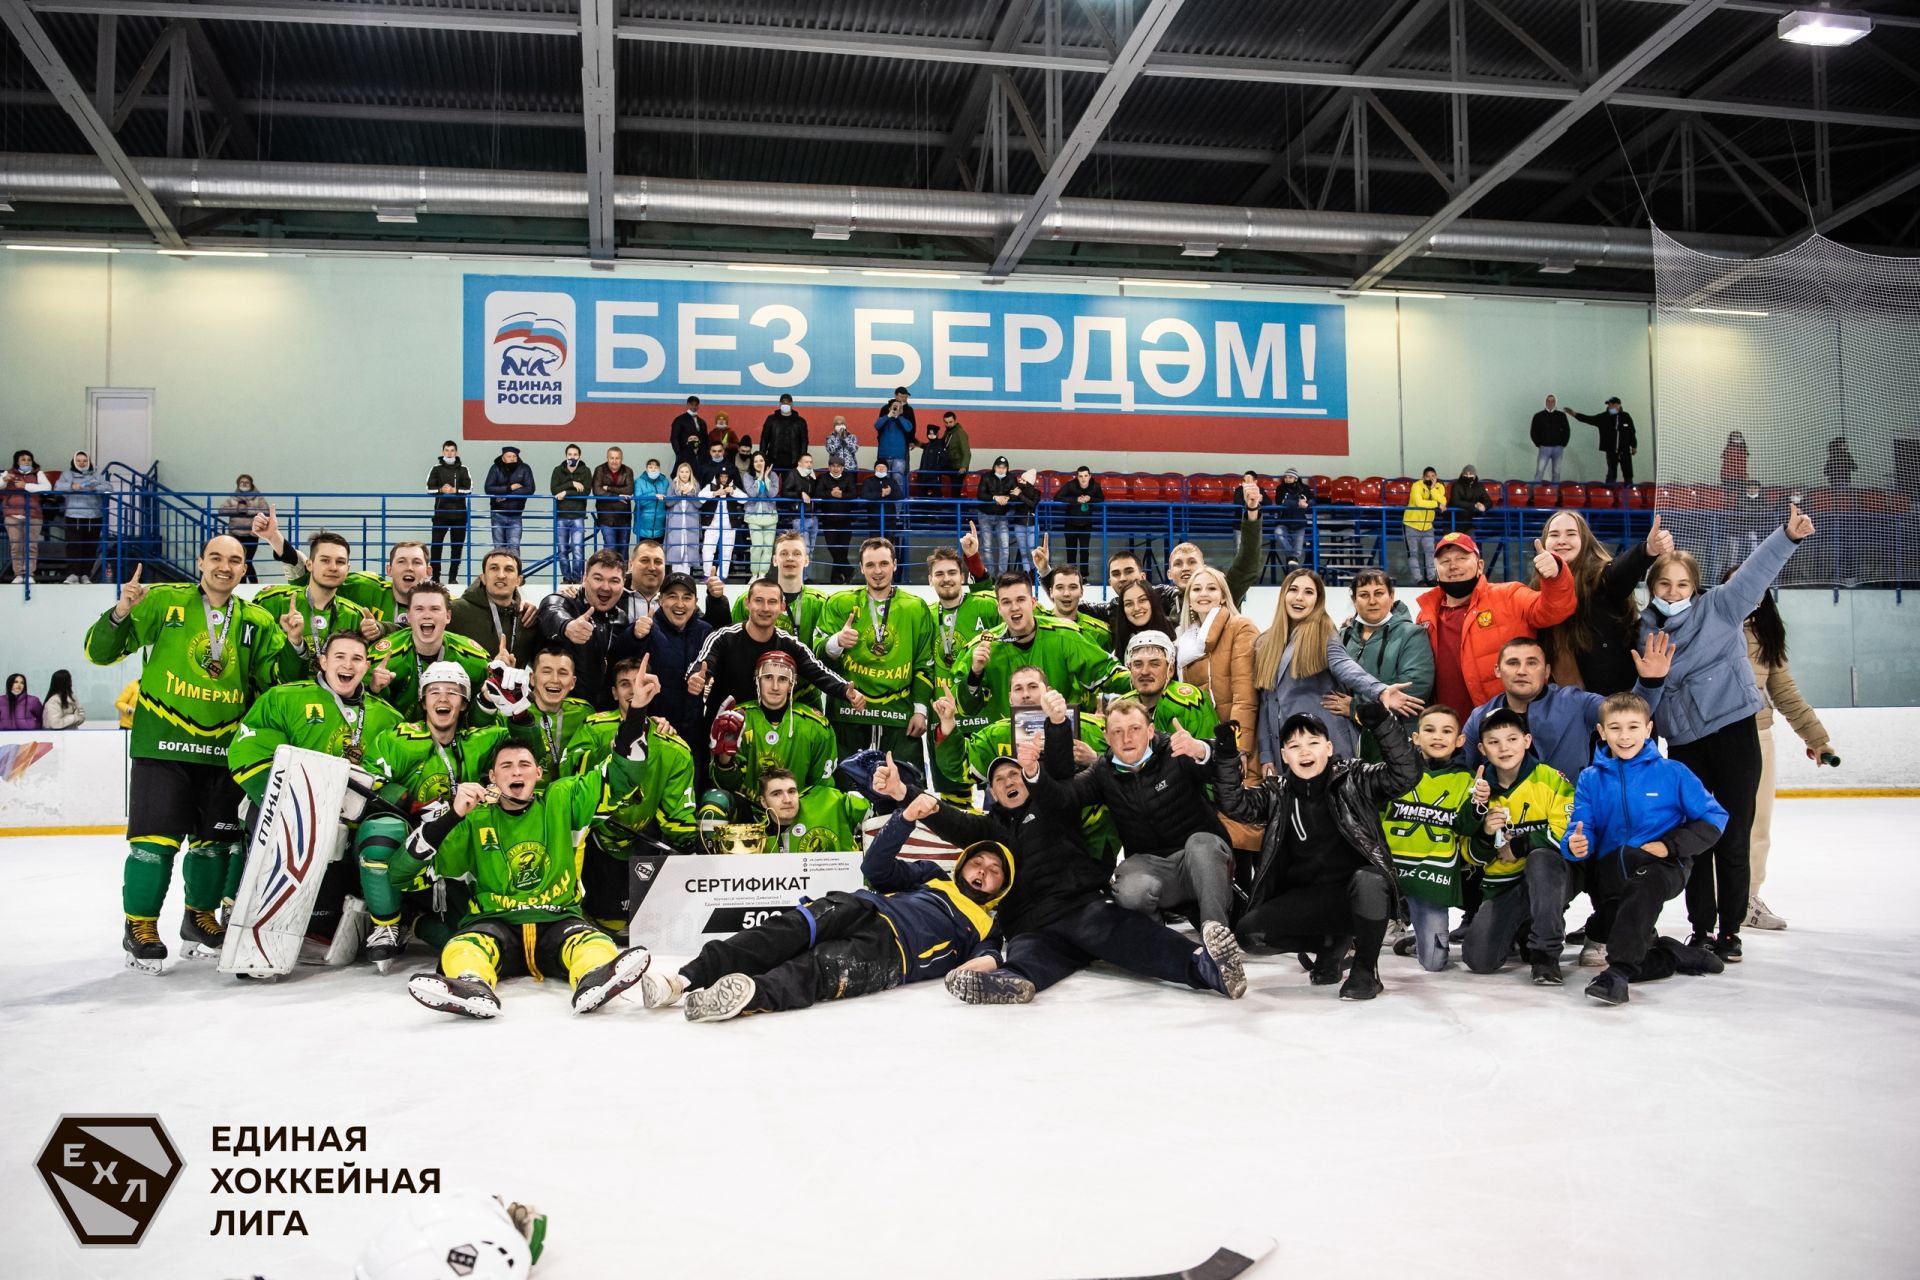 27 апреля 2021 года в ледовом дворце «Пестрецы-Арена» с Пестрецы в финале Единой Хоккейной Лиги встретились две сильнейшие команды «Пестрецы» и «Тимерхан»